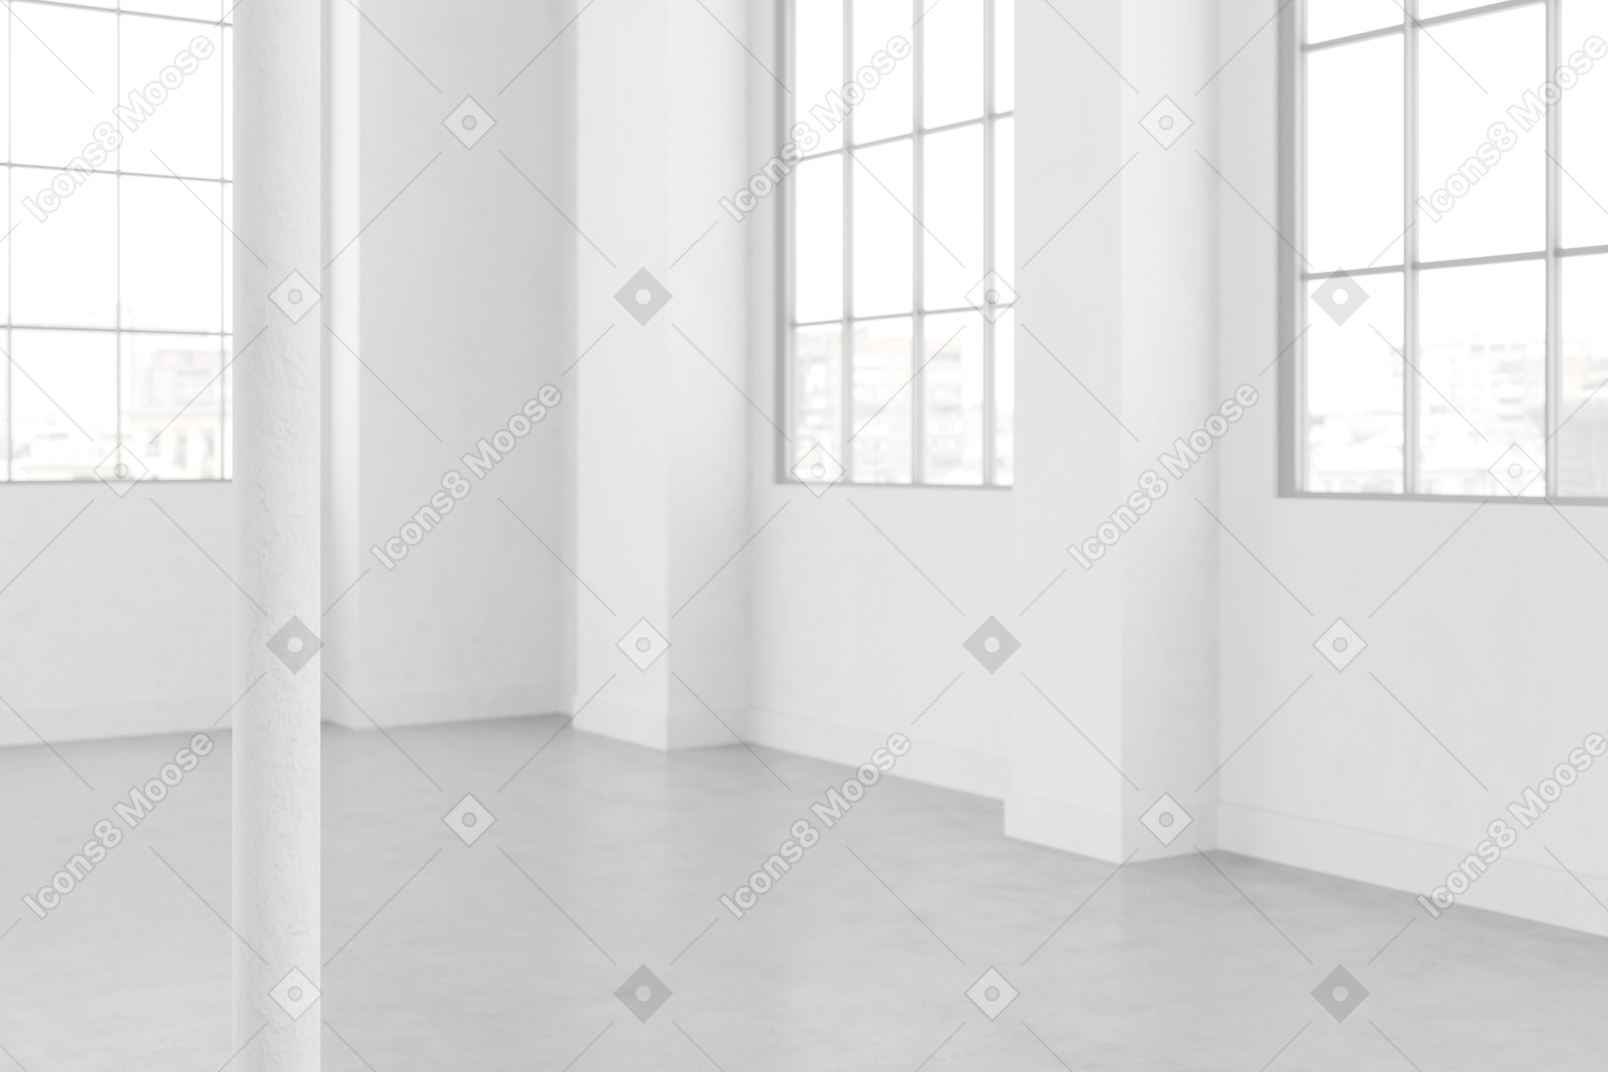 Zimmer mit großen glasfenstern und weißen wänden